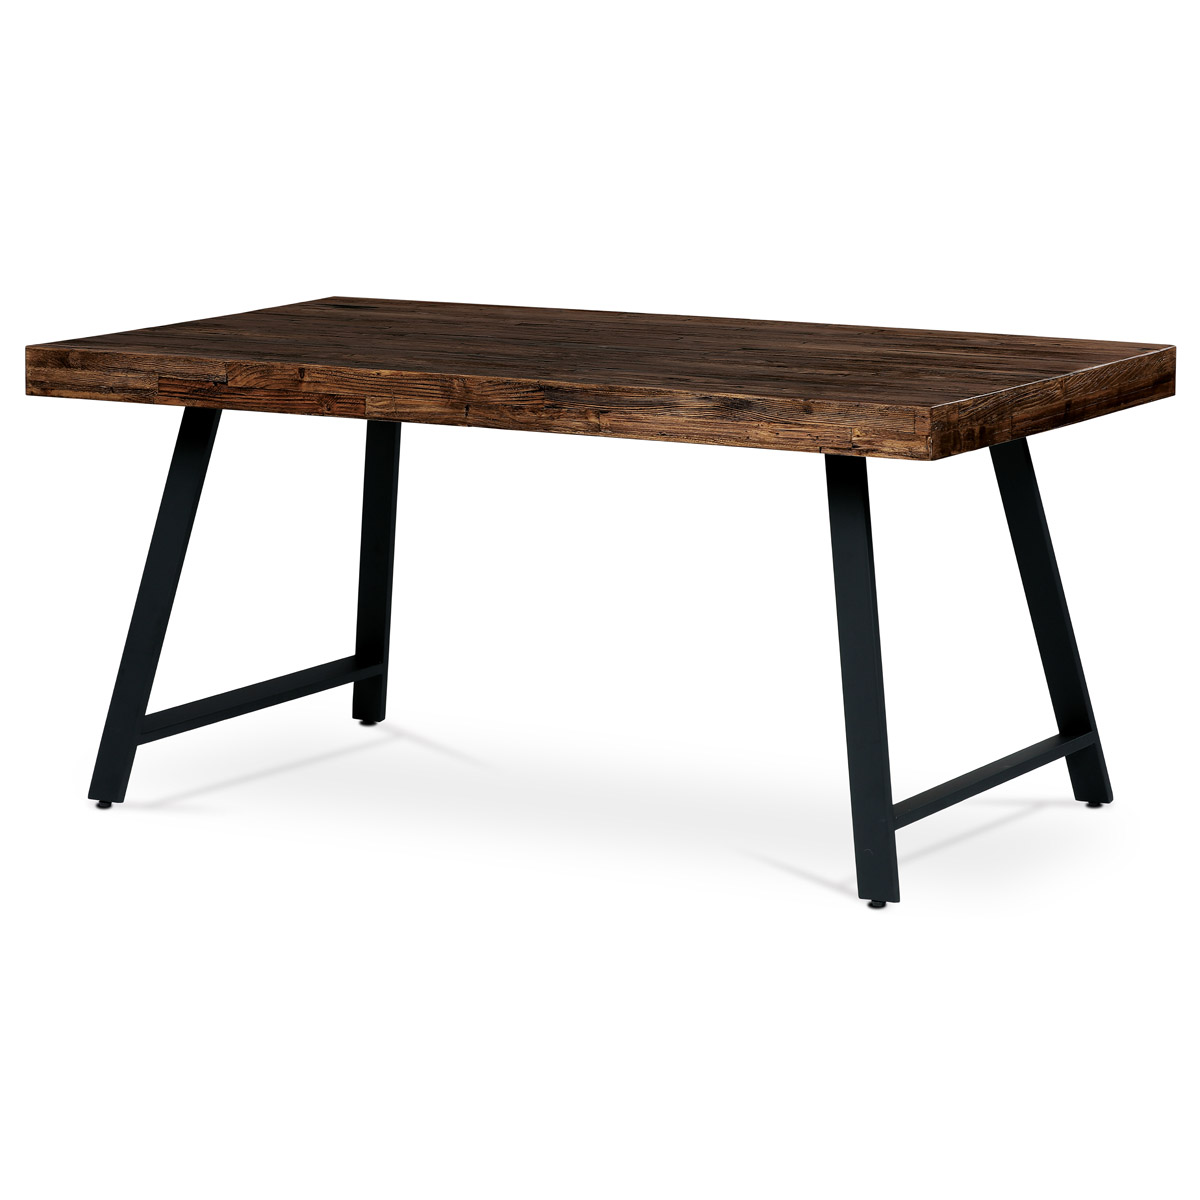 Jídelní stůl, 160x90x76 cm, MDF deska, dýha borovice, kovové nohy, černý lak